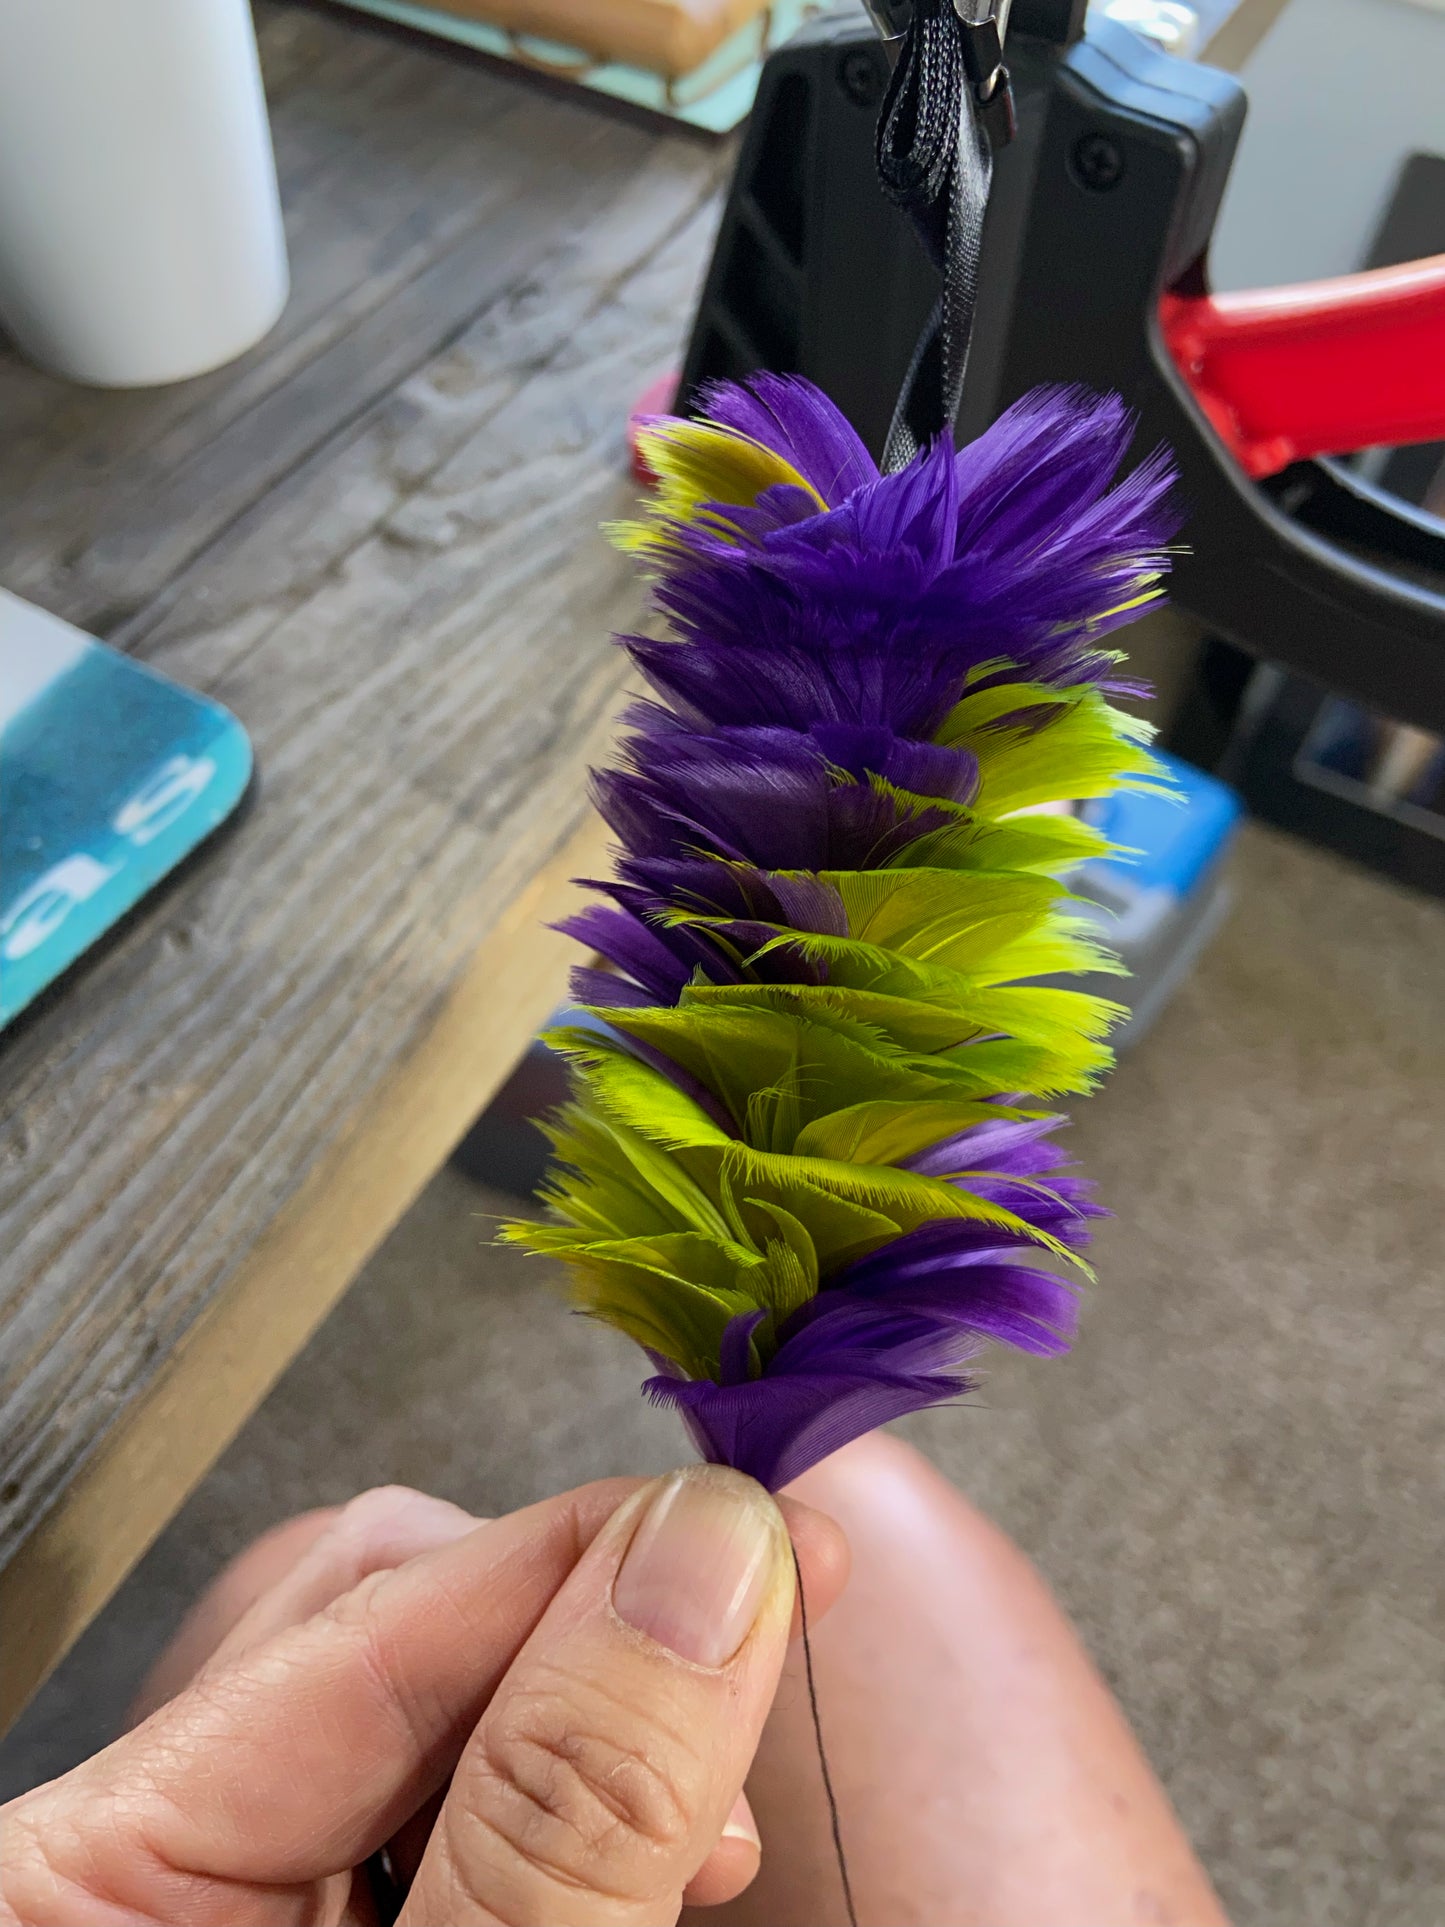 Spiral Purple and Green Lei Hulu (feather lei)